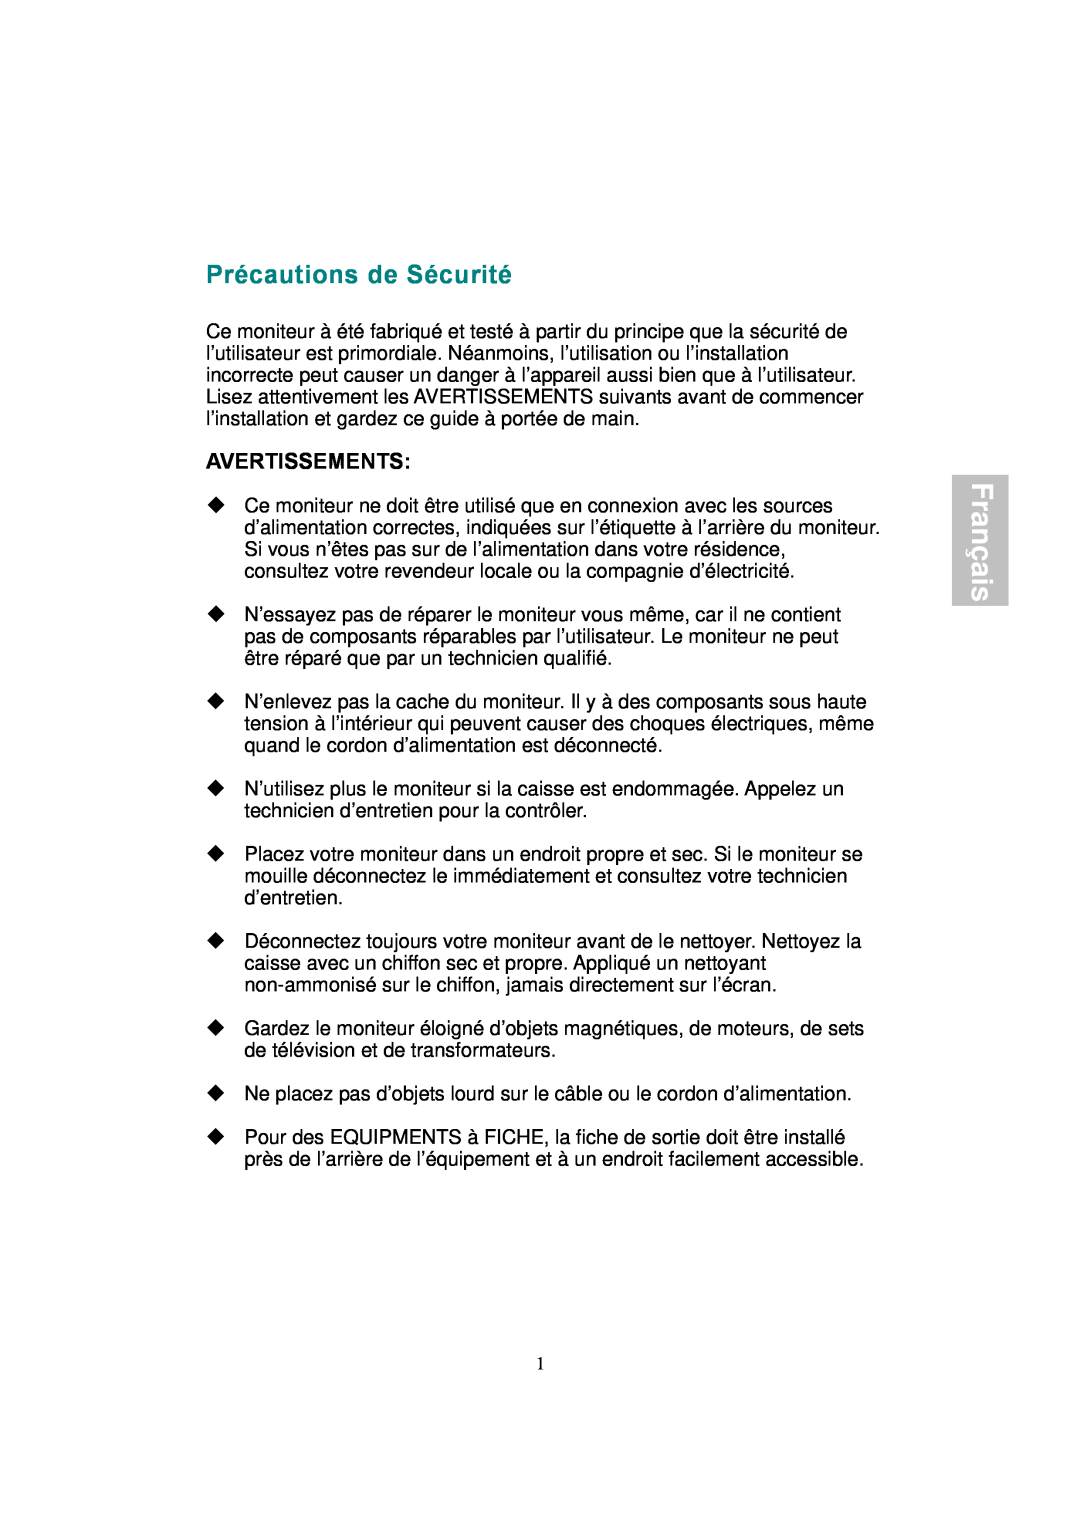 AOC 177S manual Précautions de Sécurité, Avertissements, Français 